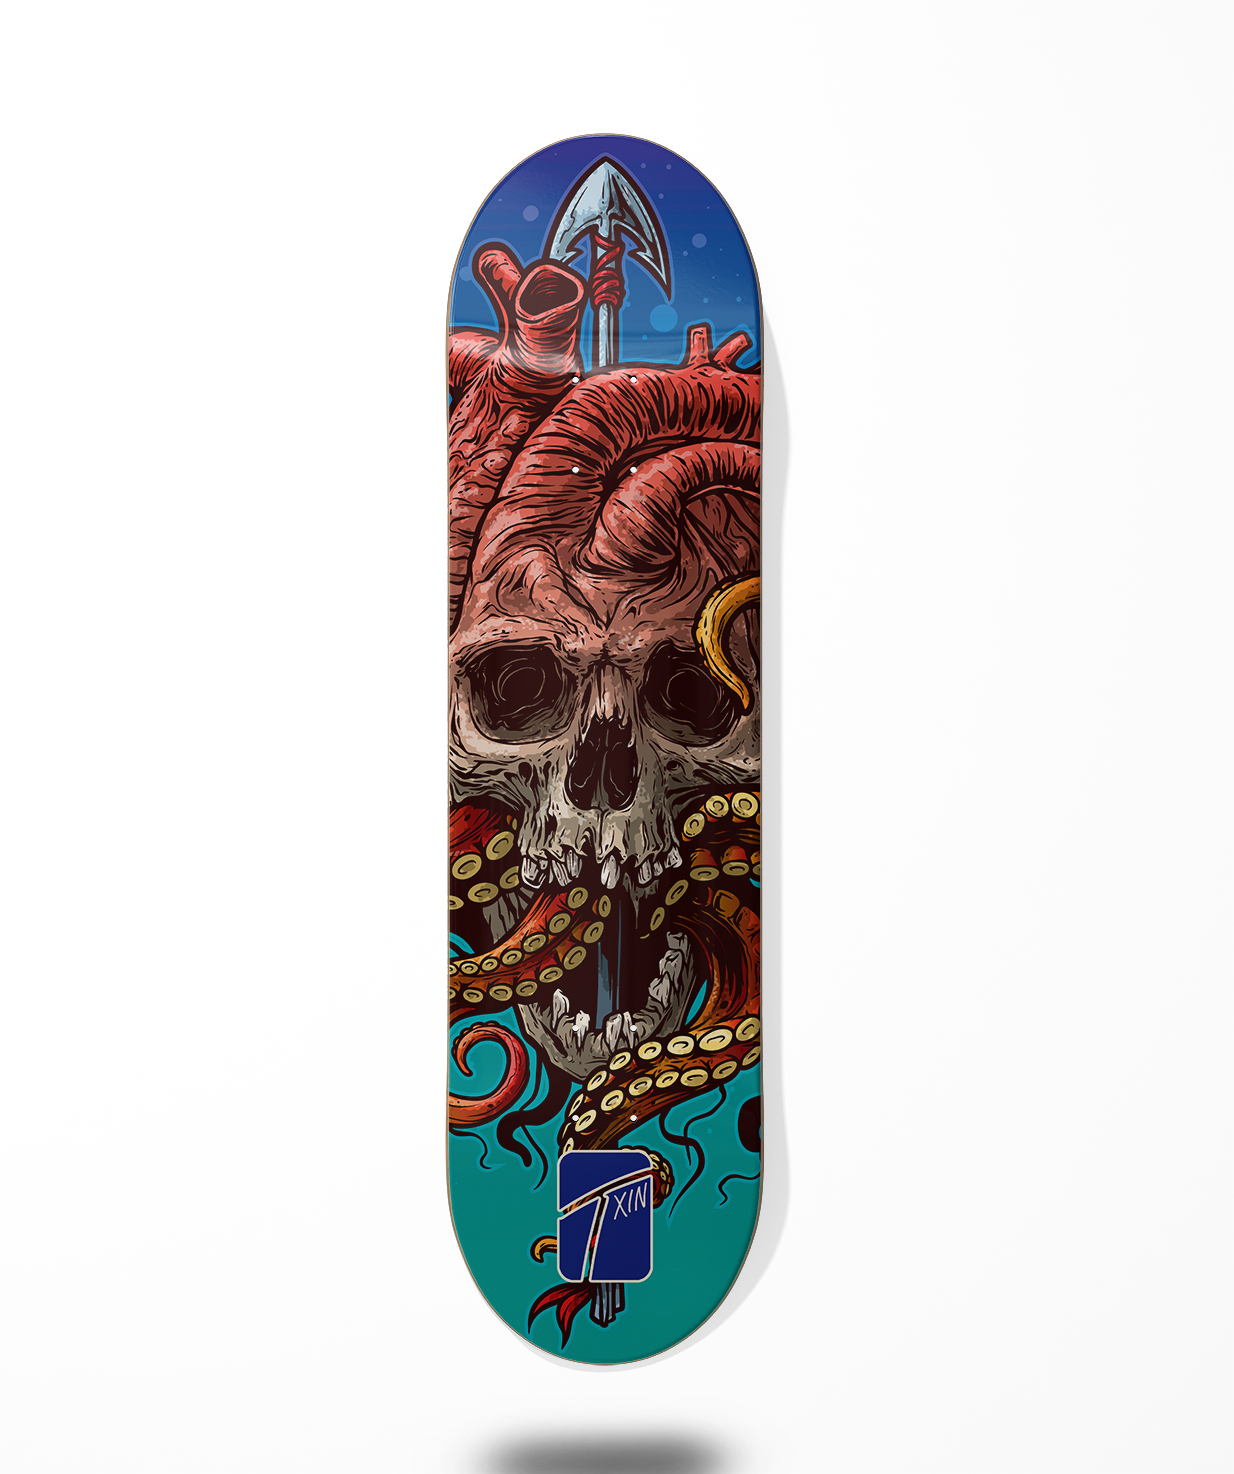 Txin skateboard deck – Grison